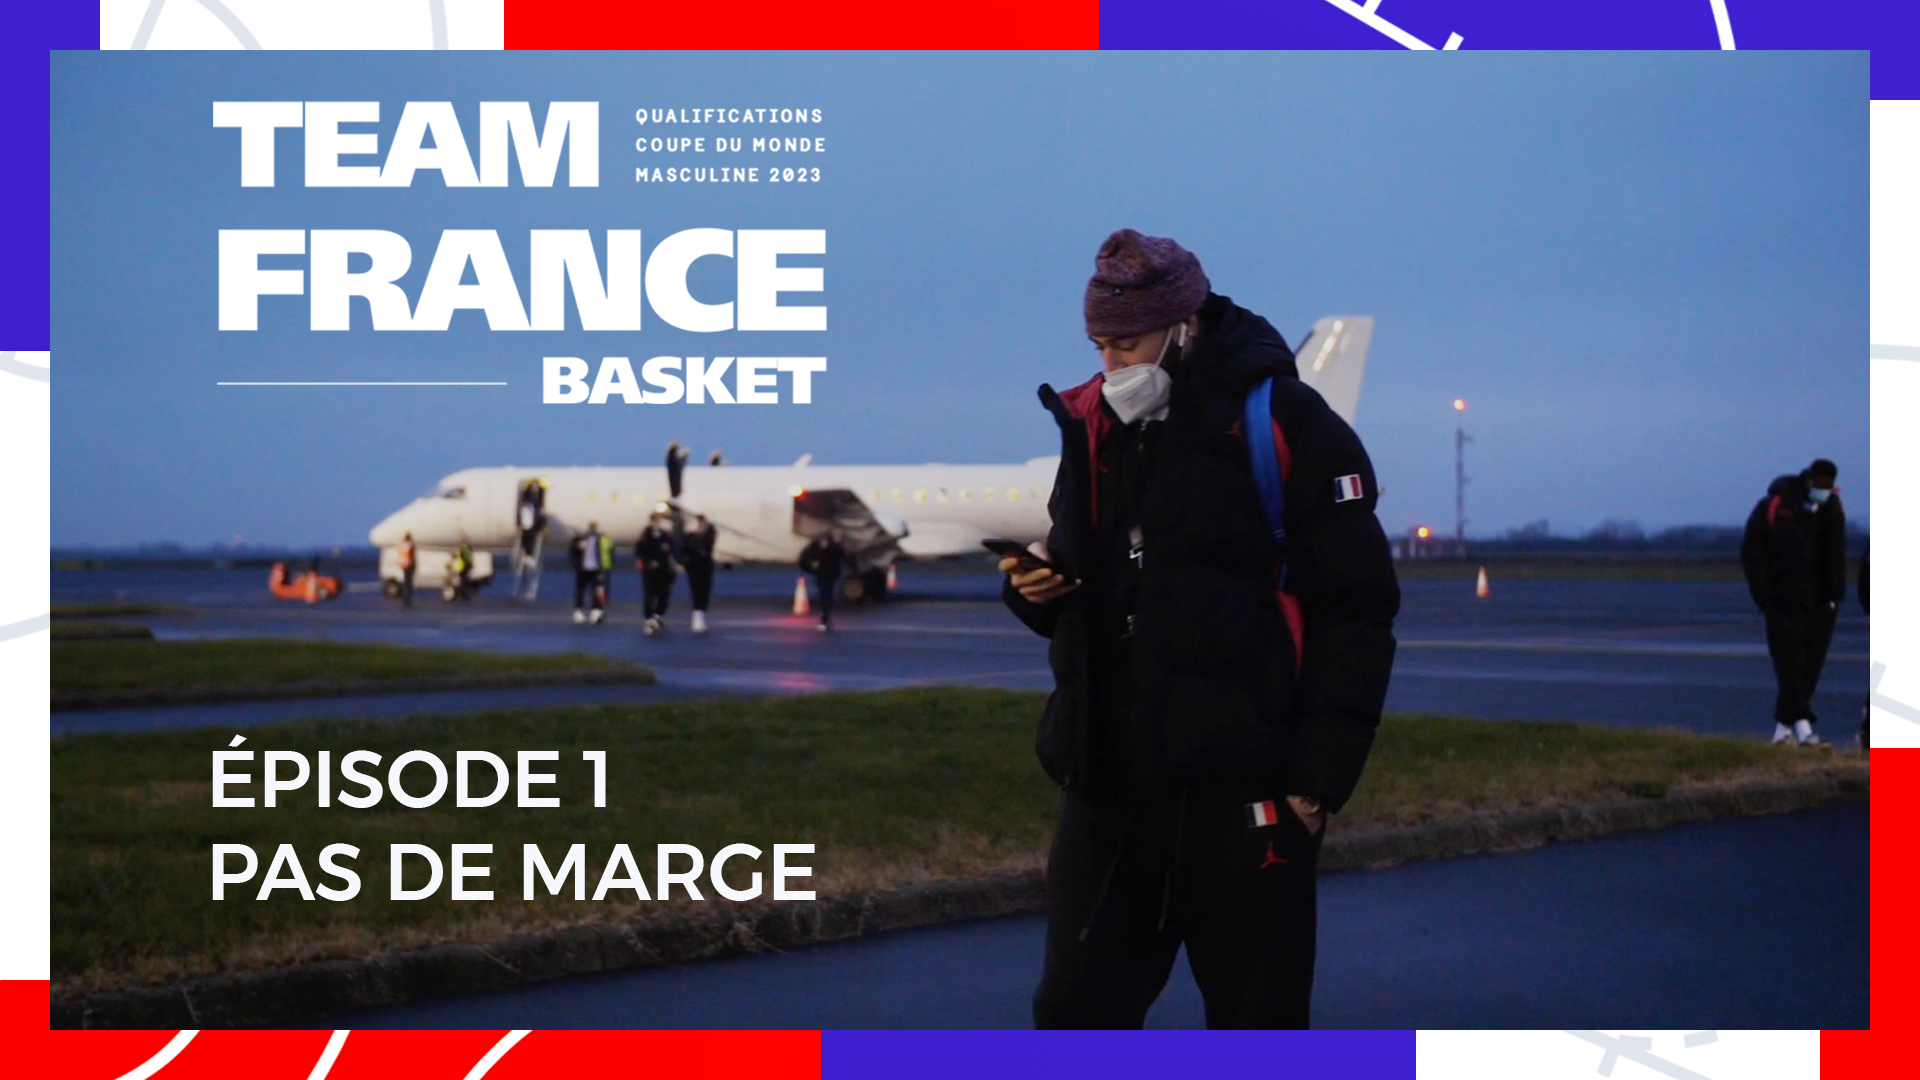 Web-Série Team France Basket | Qualifications Coupe du Monde 2023 | Épisode 1 : Pas de marge